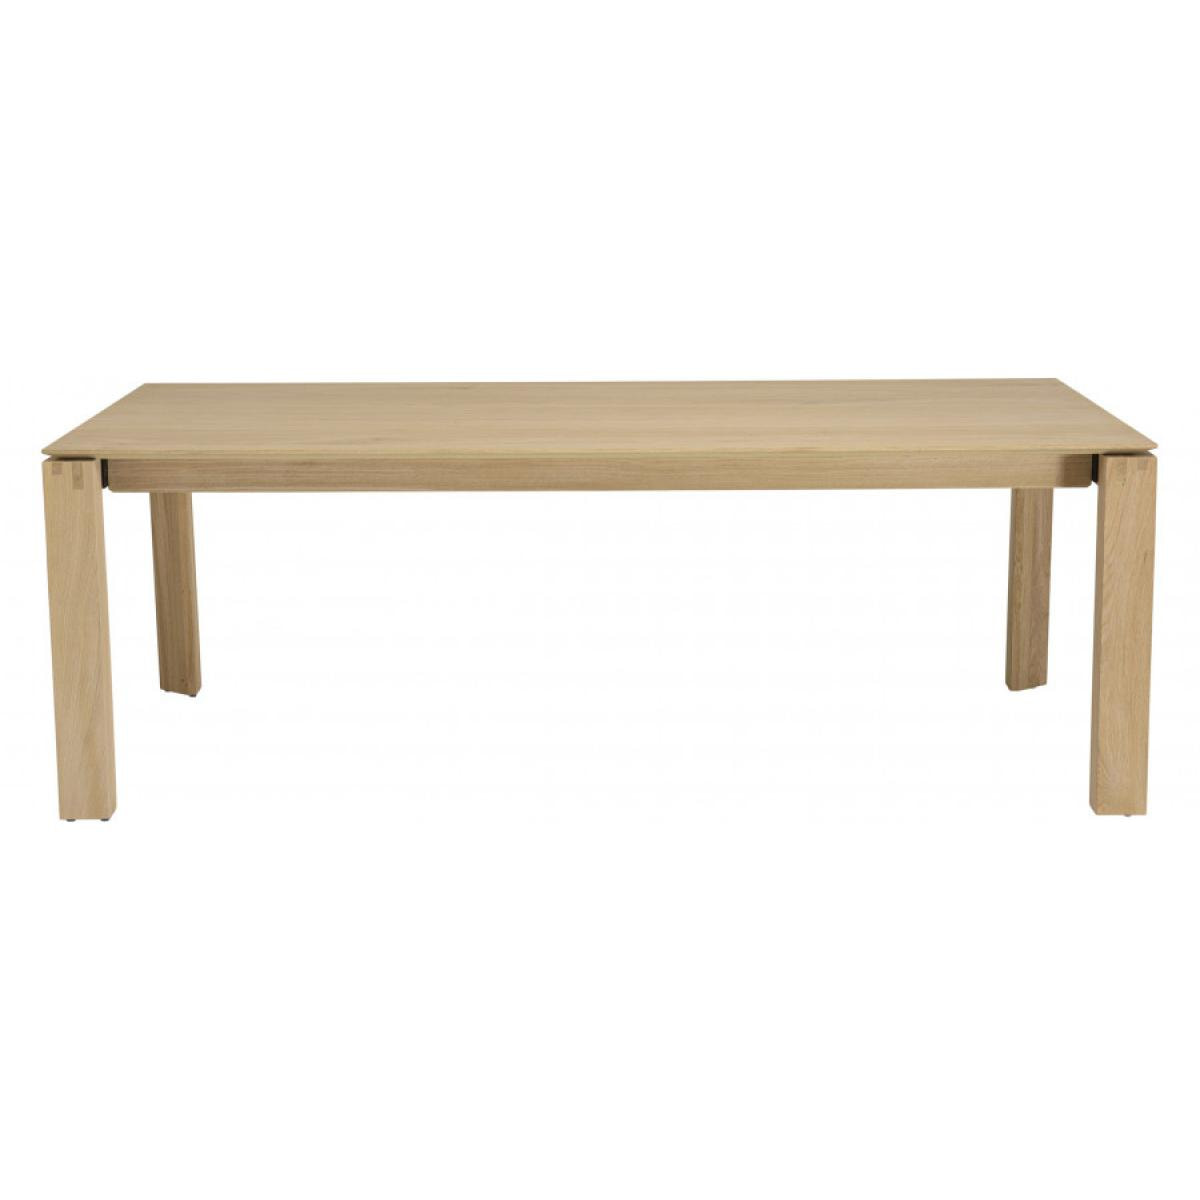 MADISON - Table à manger rectangulaire extensible 220/320cm bois chêne